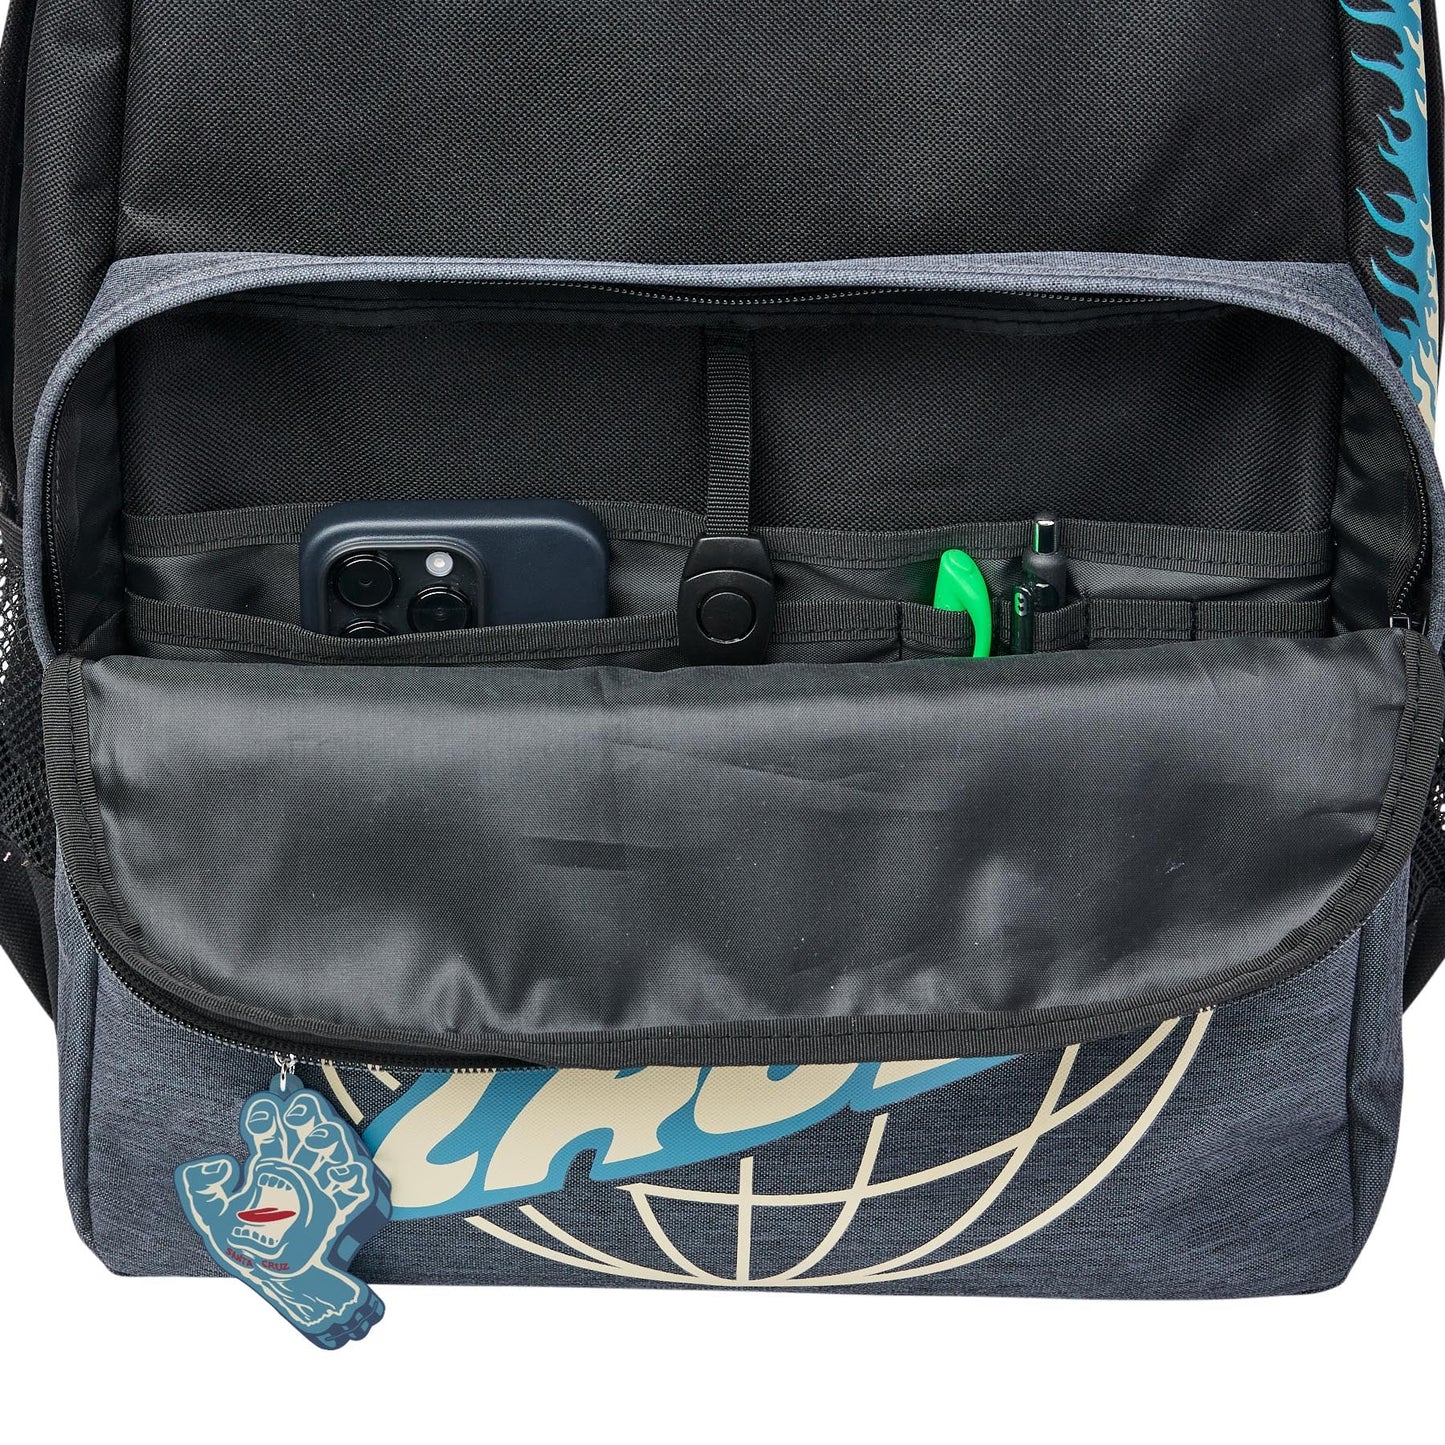 SANTA CRUZ Global Flame Dot Backpack